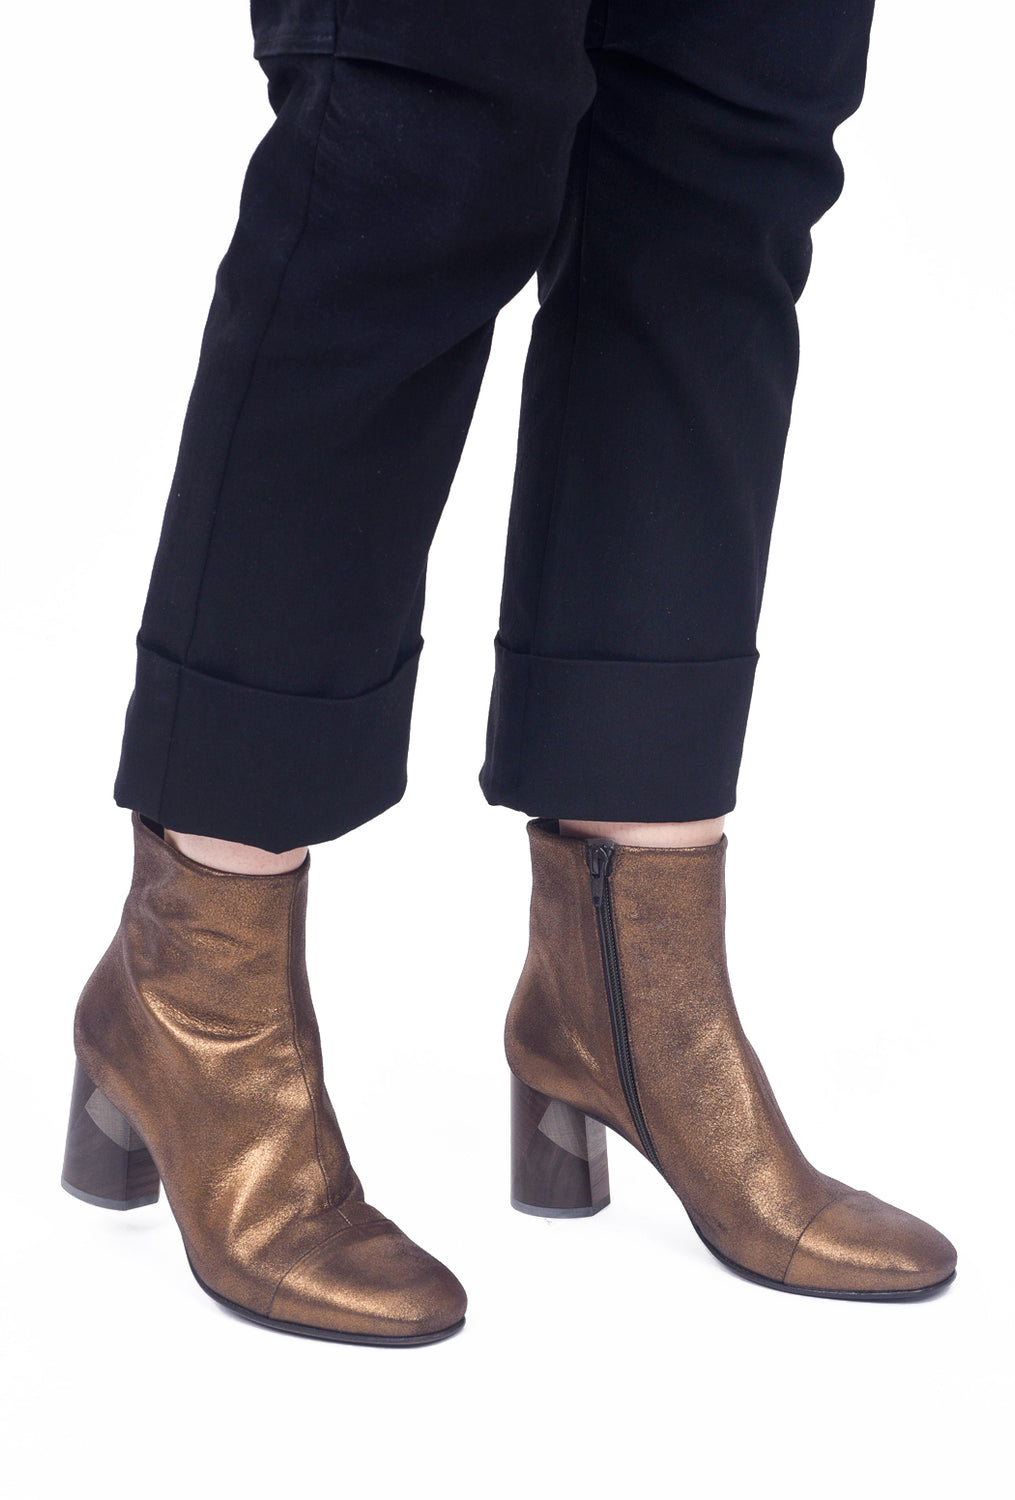 bronze metallic boots